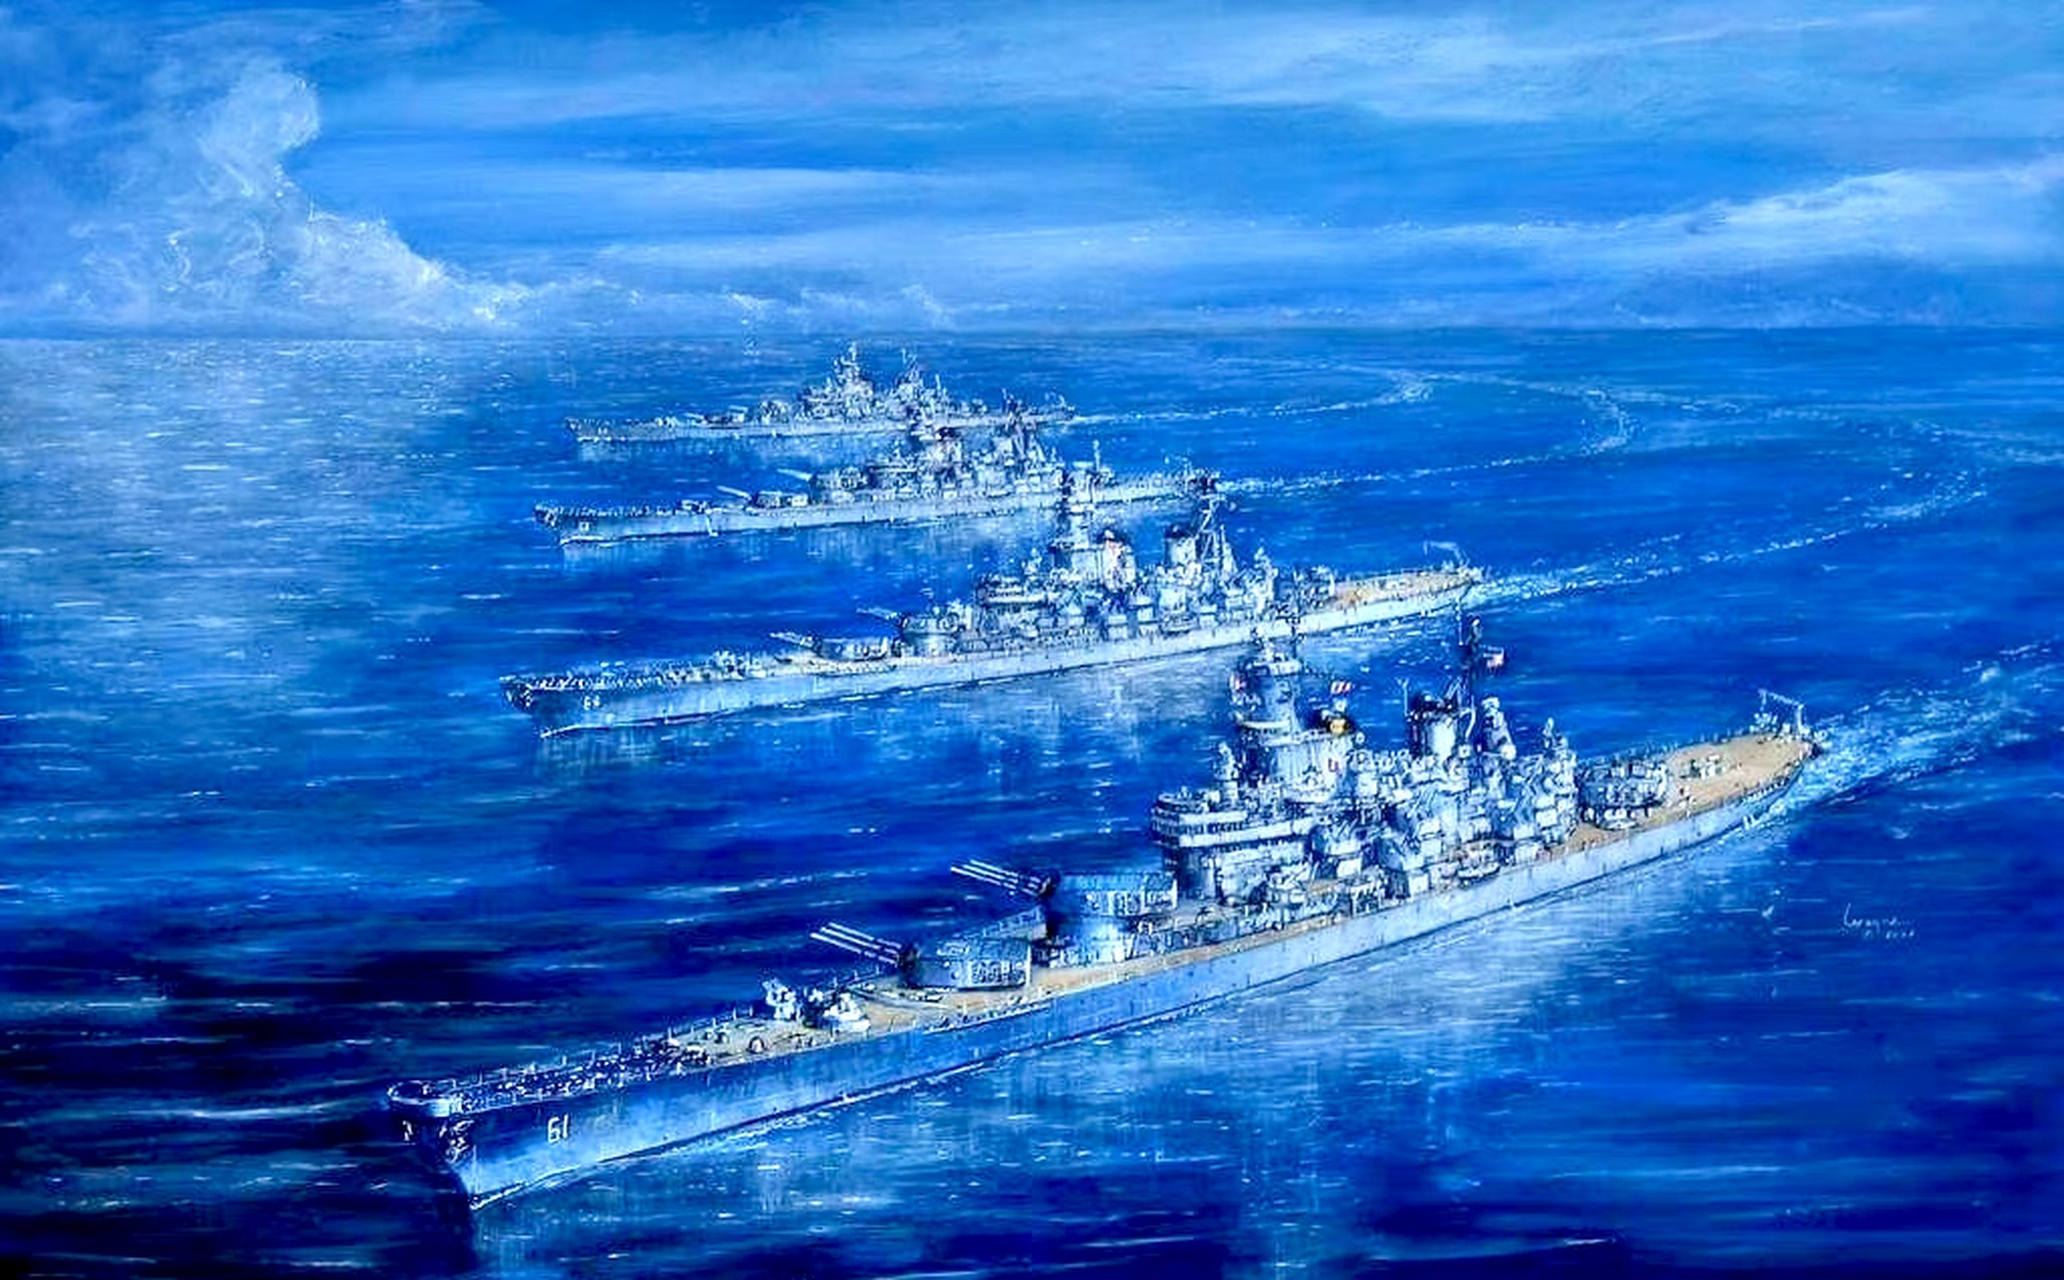 一组战列舰绘画作品欣赏,虽然已经成为了历史,但是它们的身影和故事不